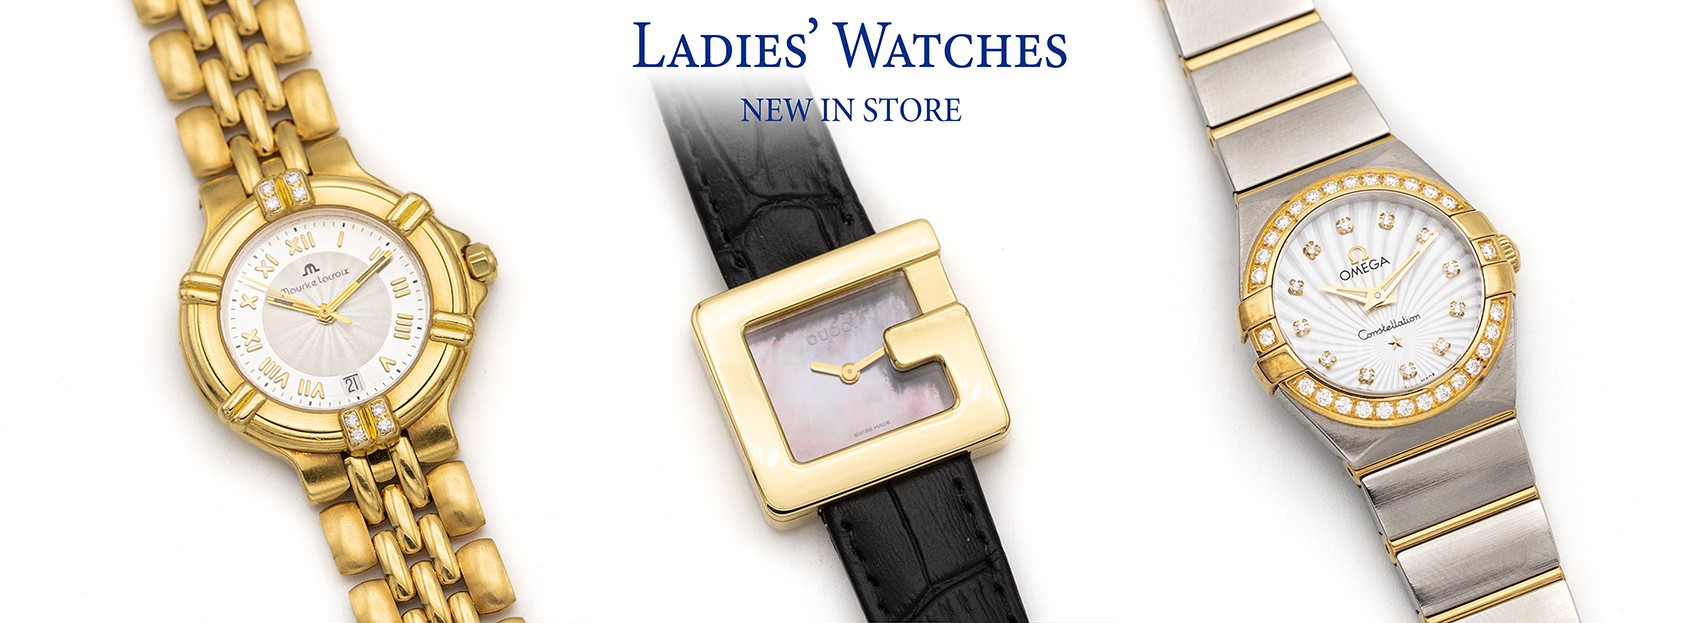 Ladies' Watches